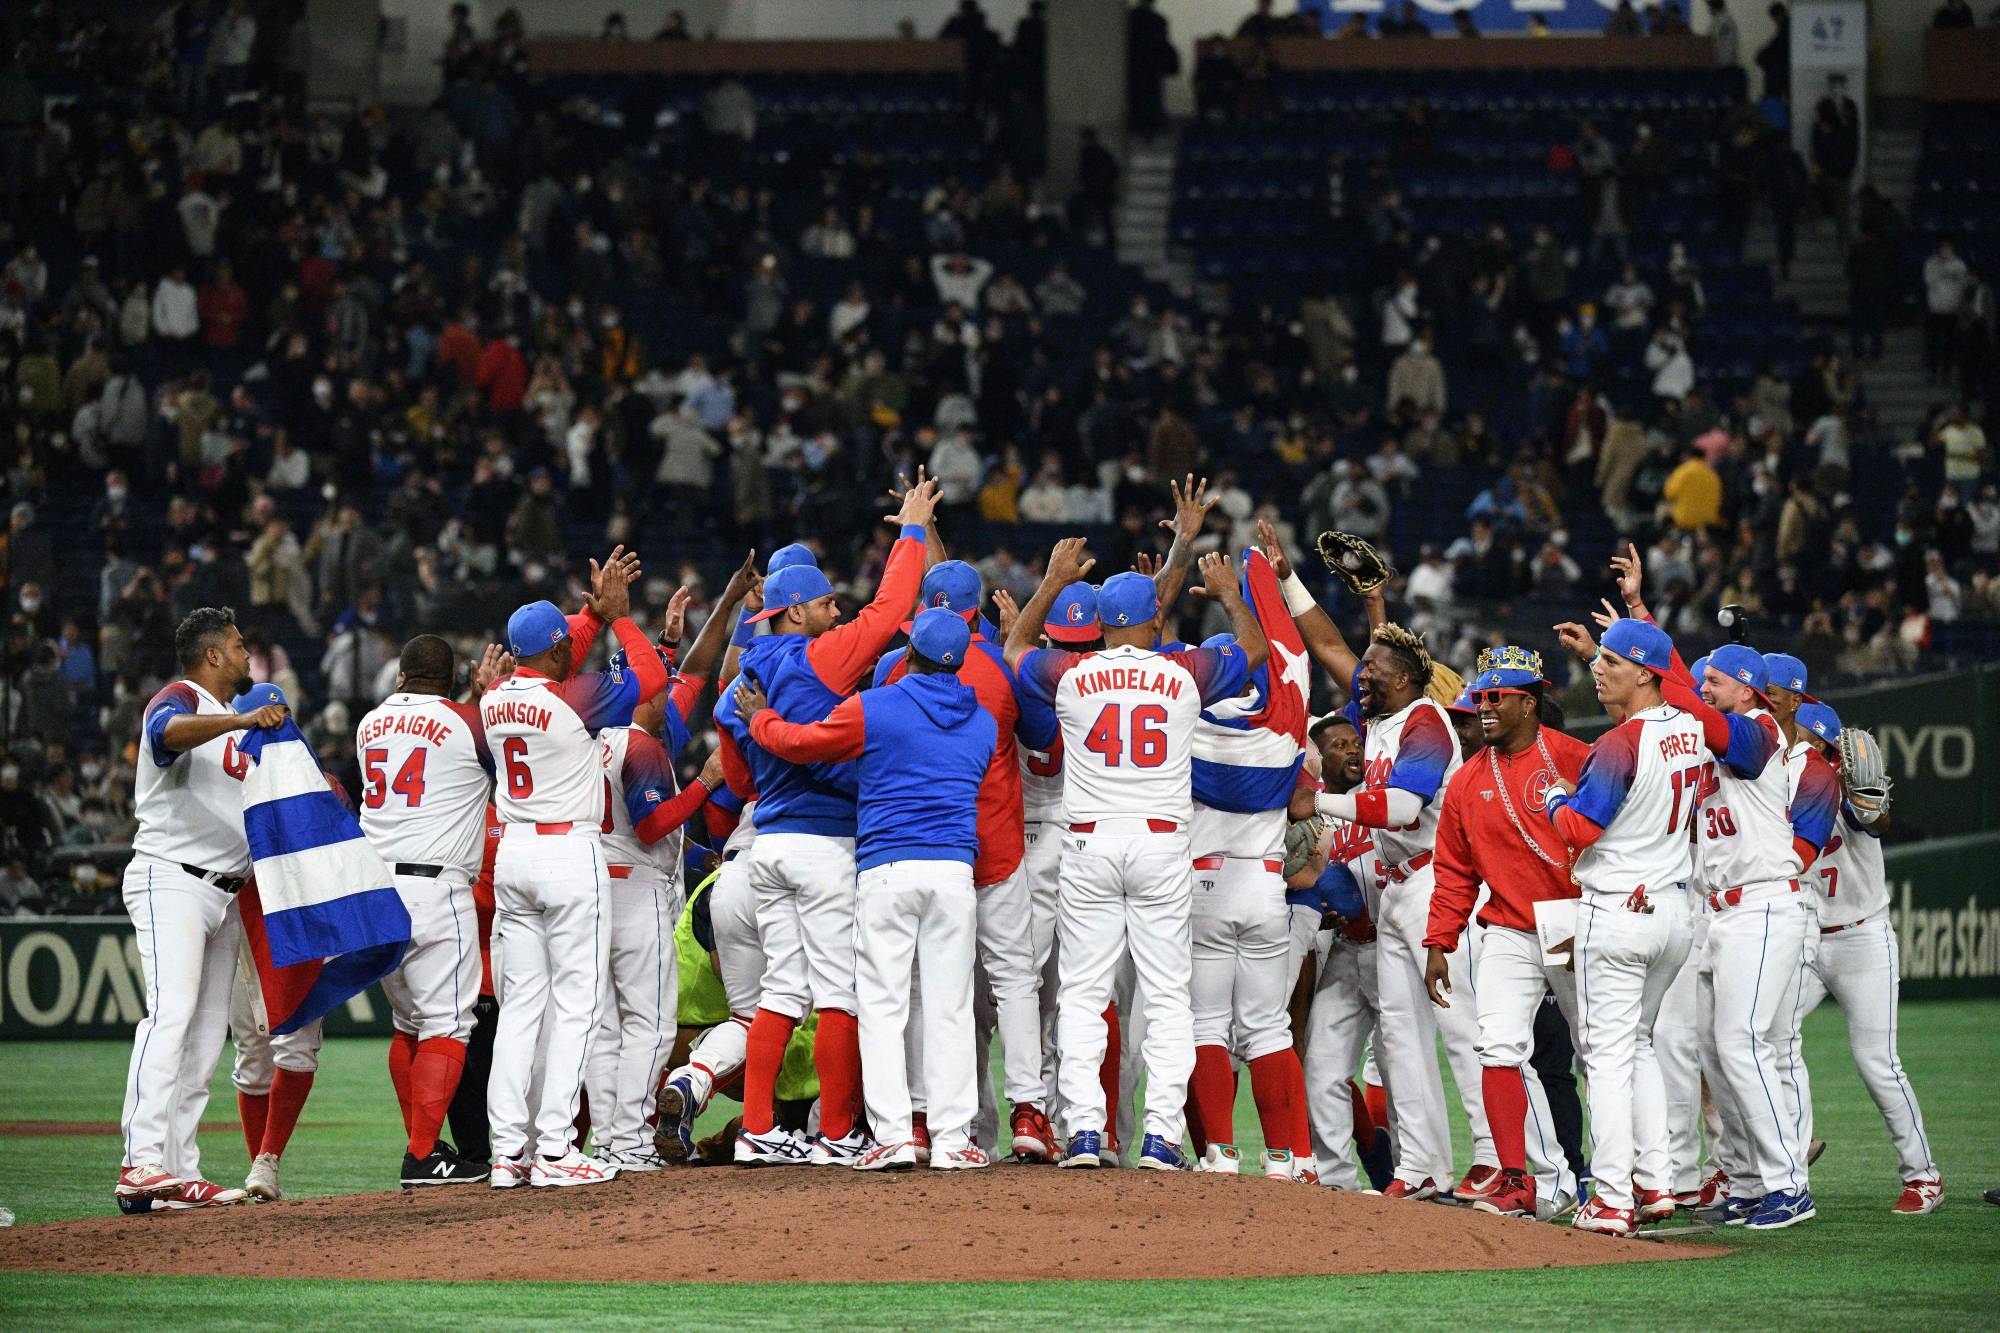 Netherlands stun Cuba in World Baseball Classic opener - The Japan